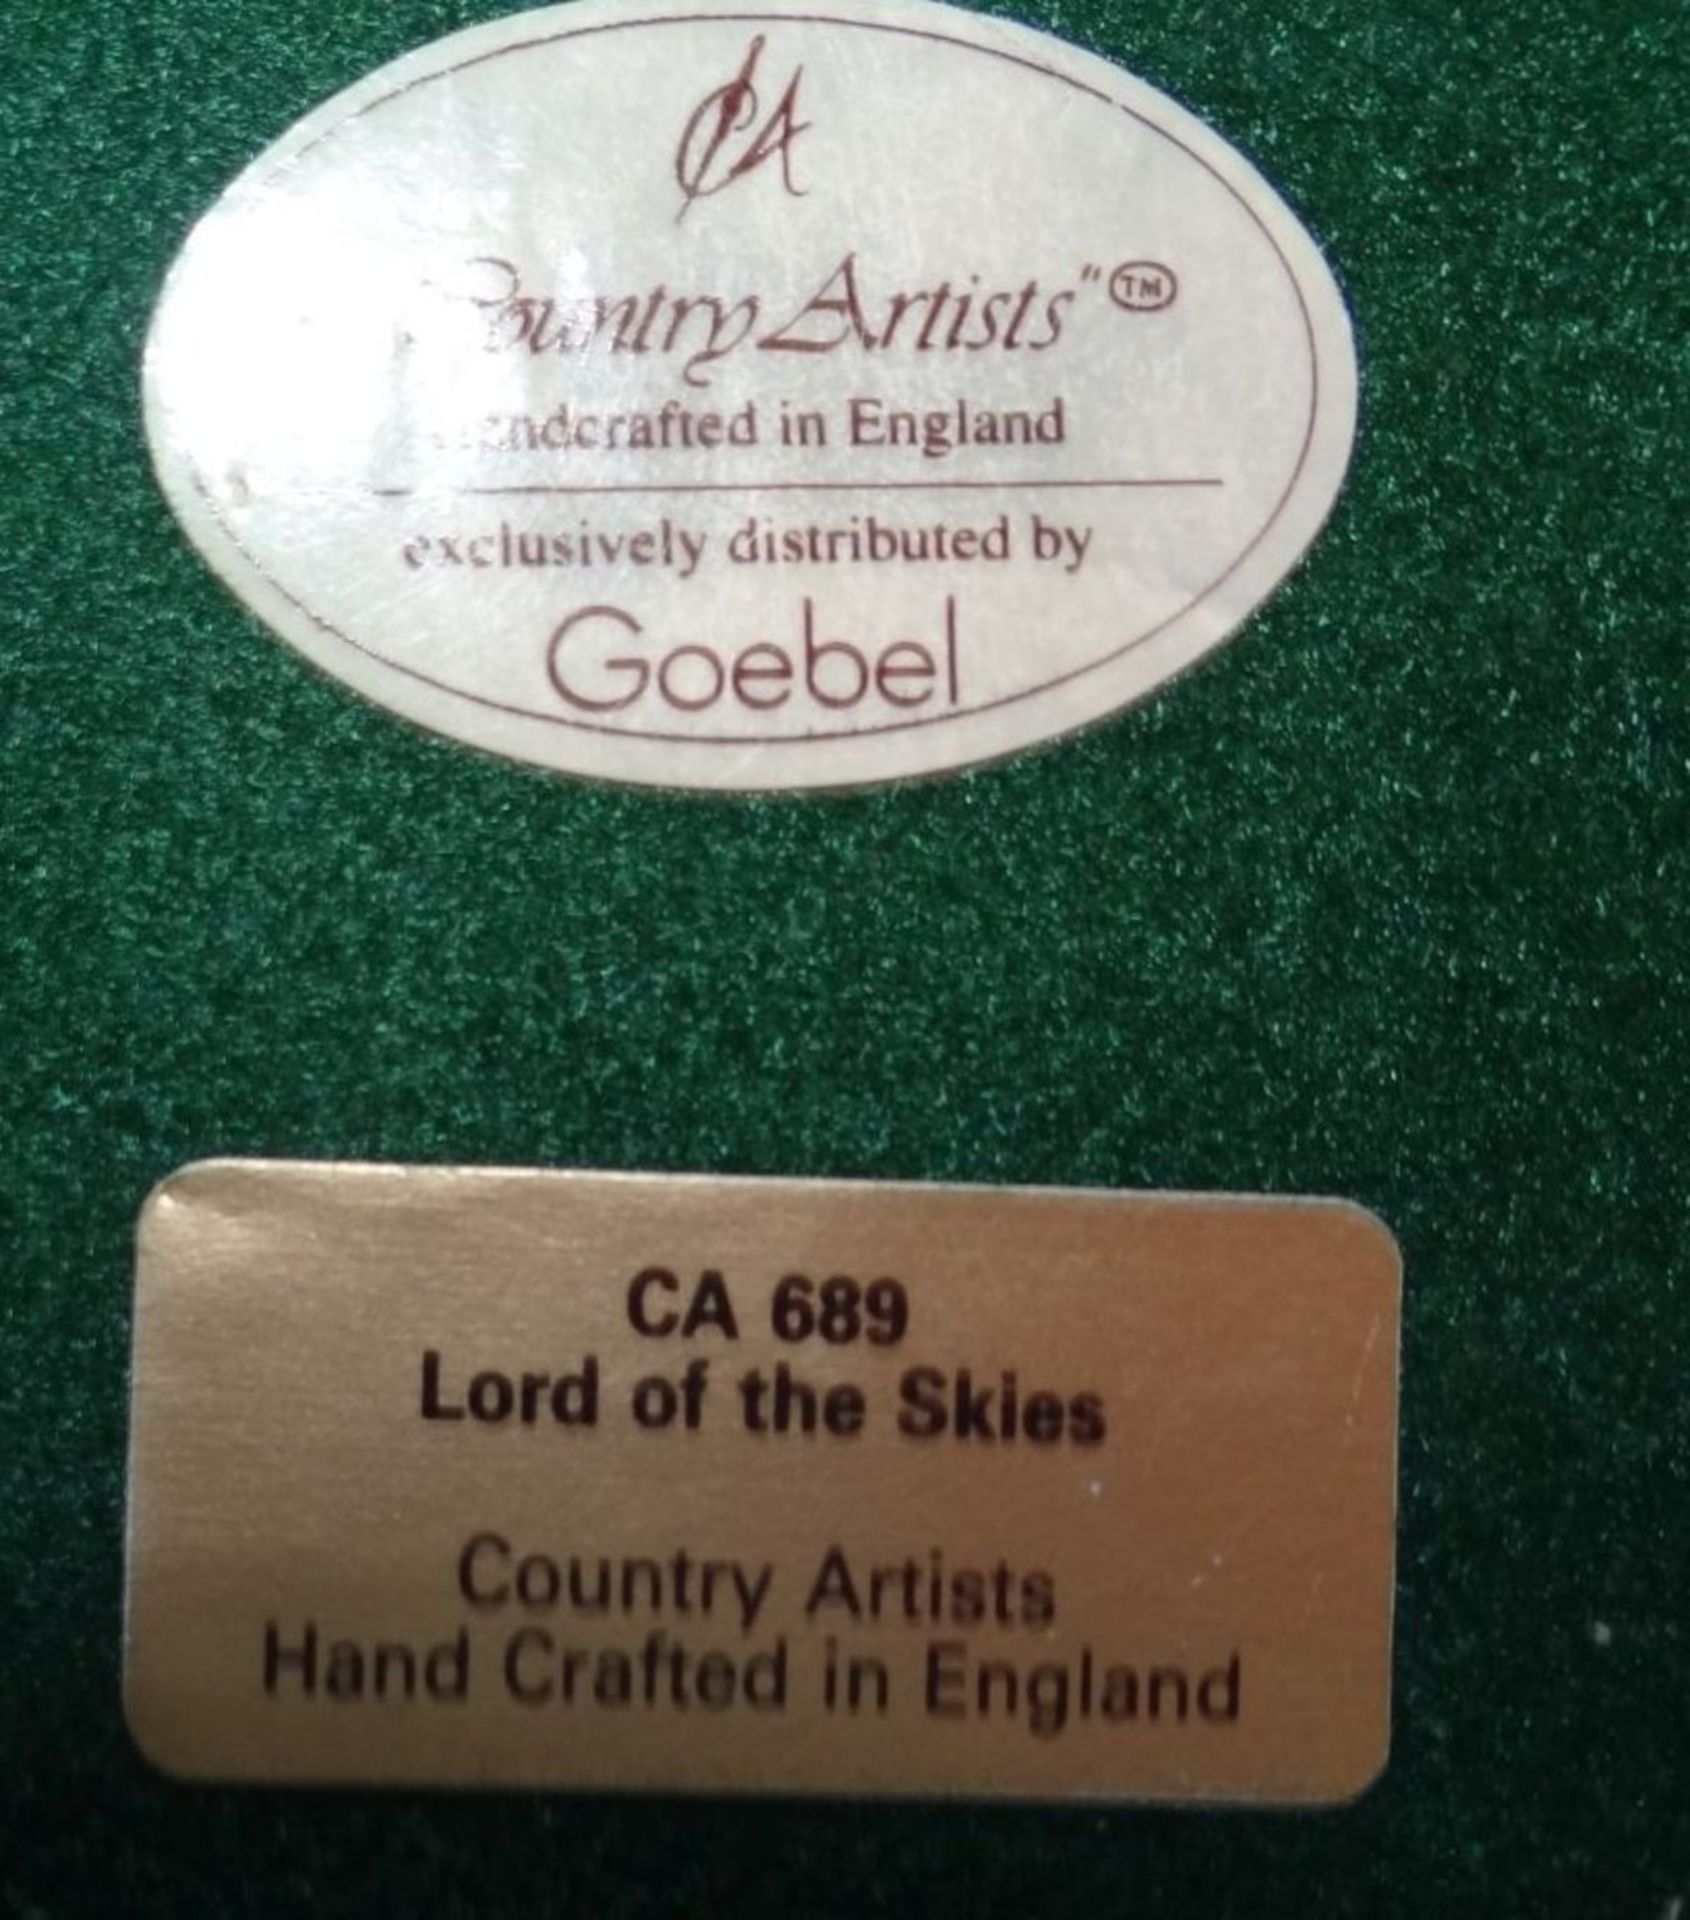 grosser Raubvogel von Goebel "Lord of the skies" handcrafted in England, H-40 cm, B-32 cm - Bild 2 aus 10